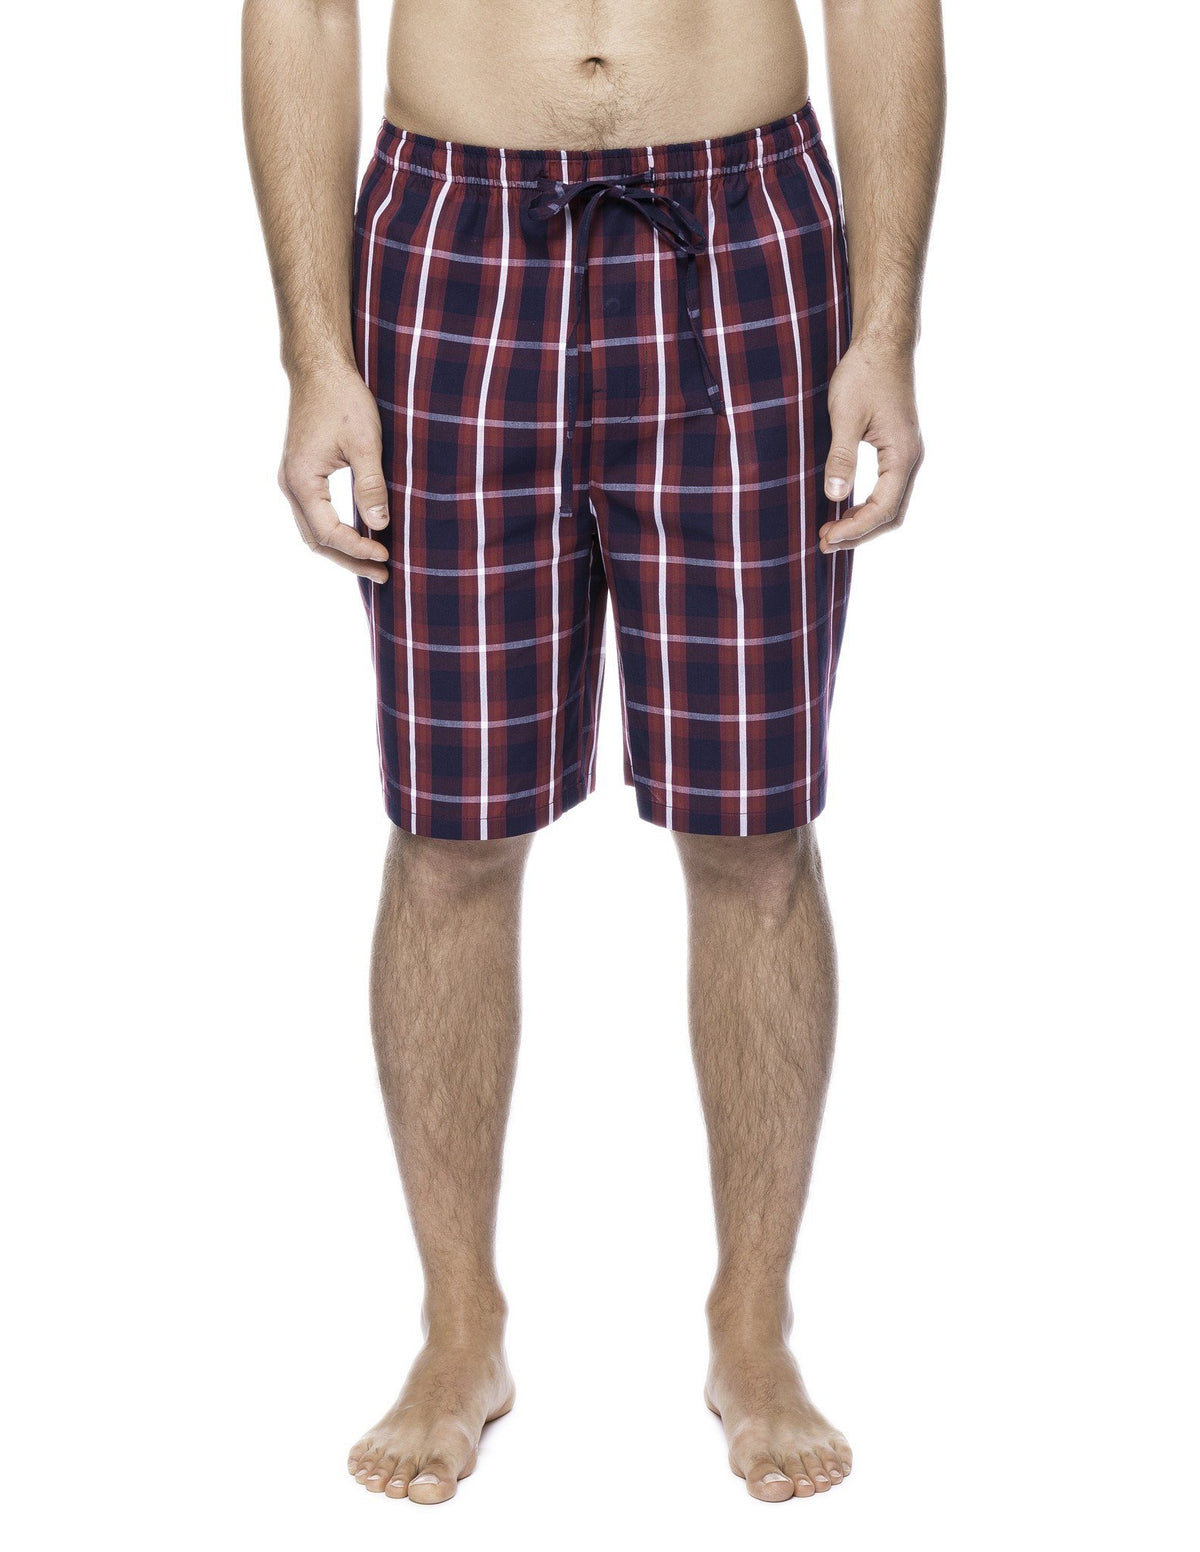 Men's 100% Woven Cotton Lounge Shorts - Patriotic Plaid